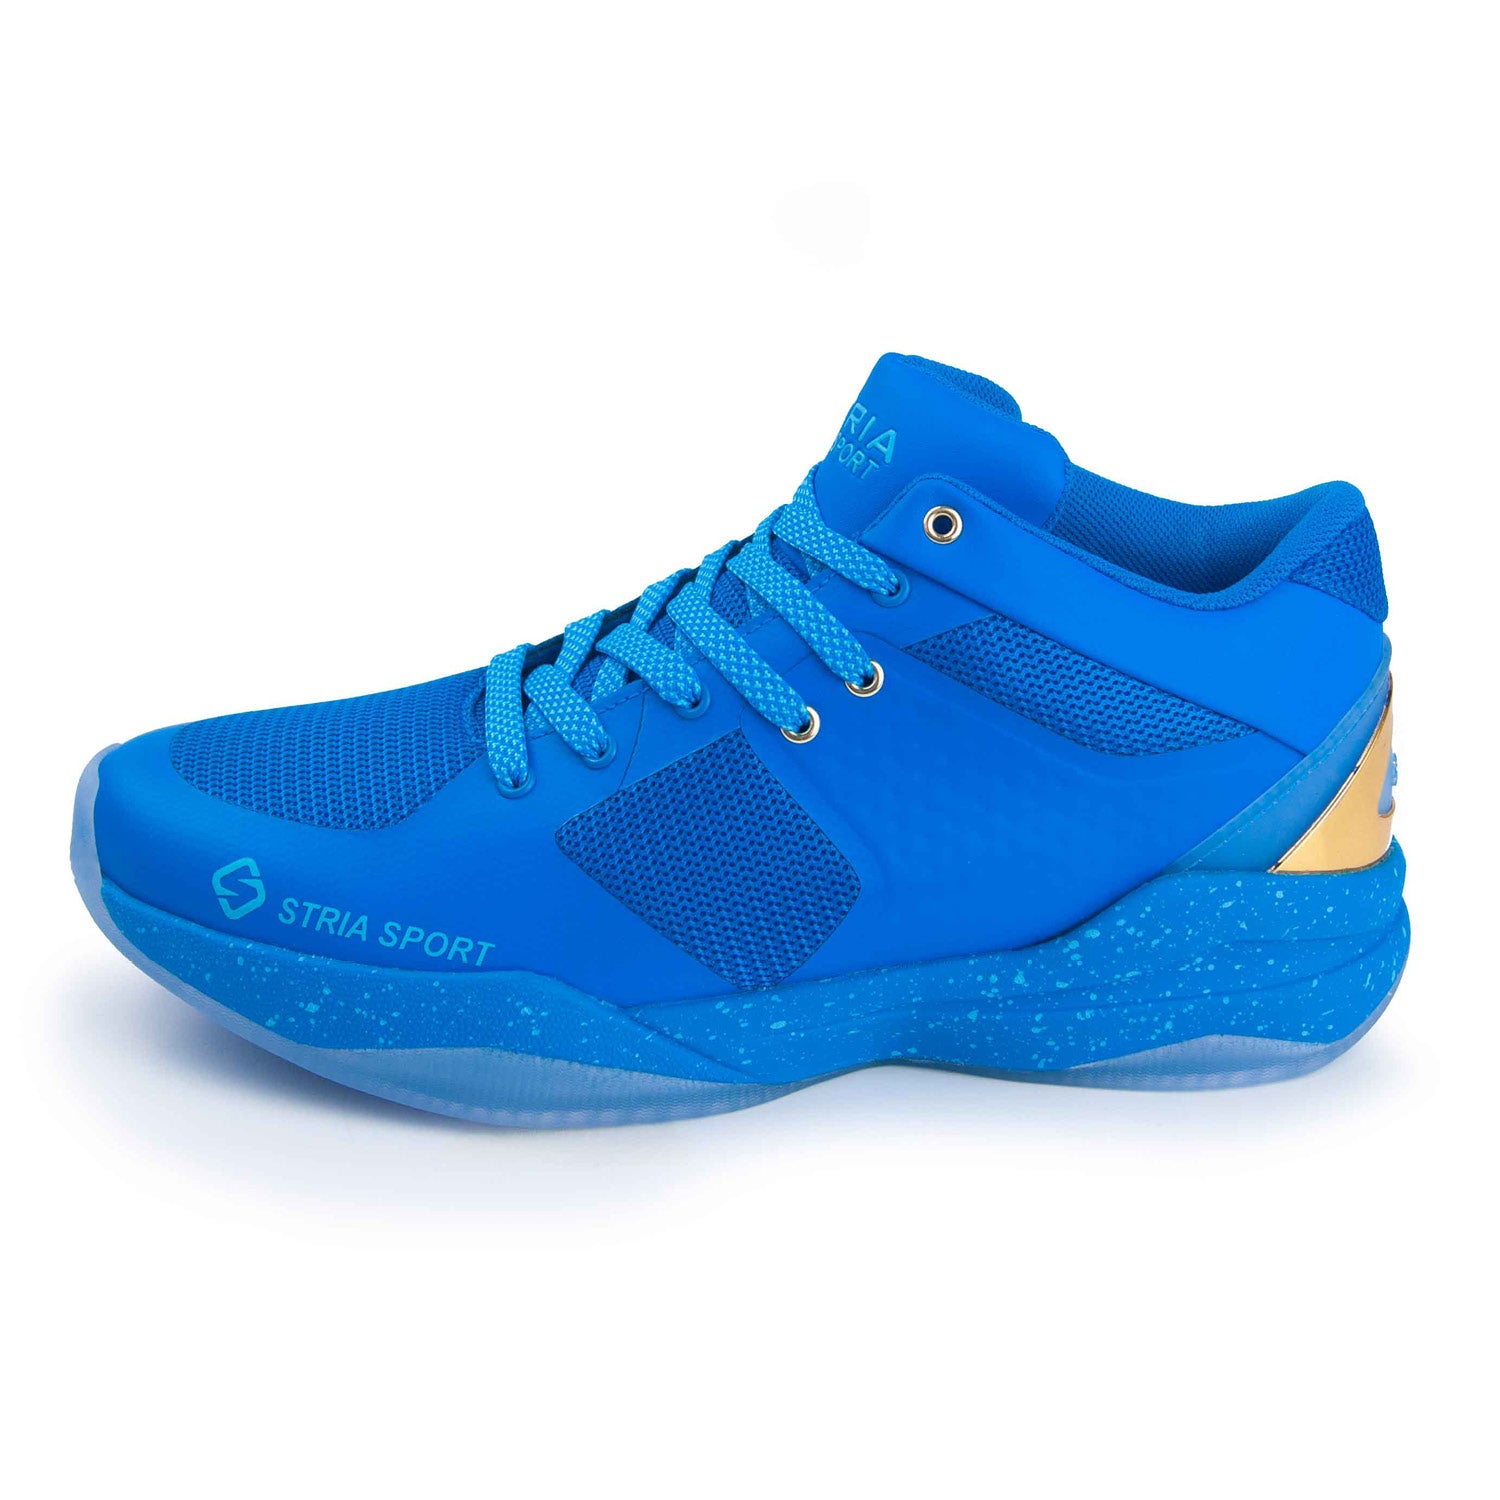 Stria Sport All Blue Basketball Shoe